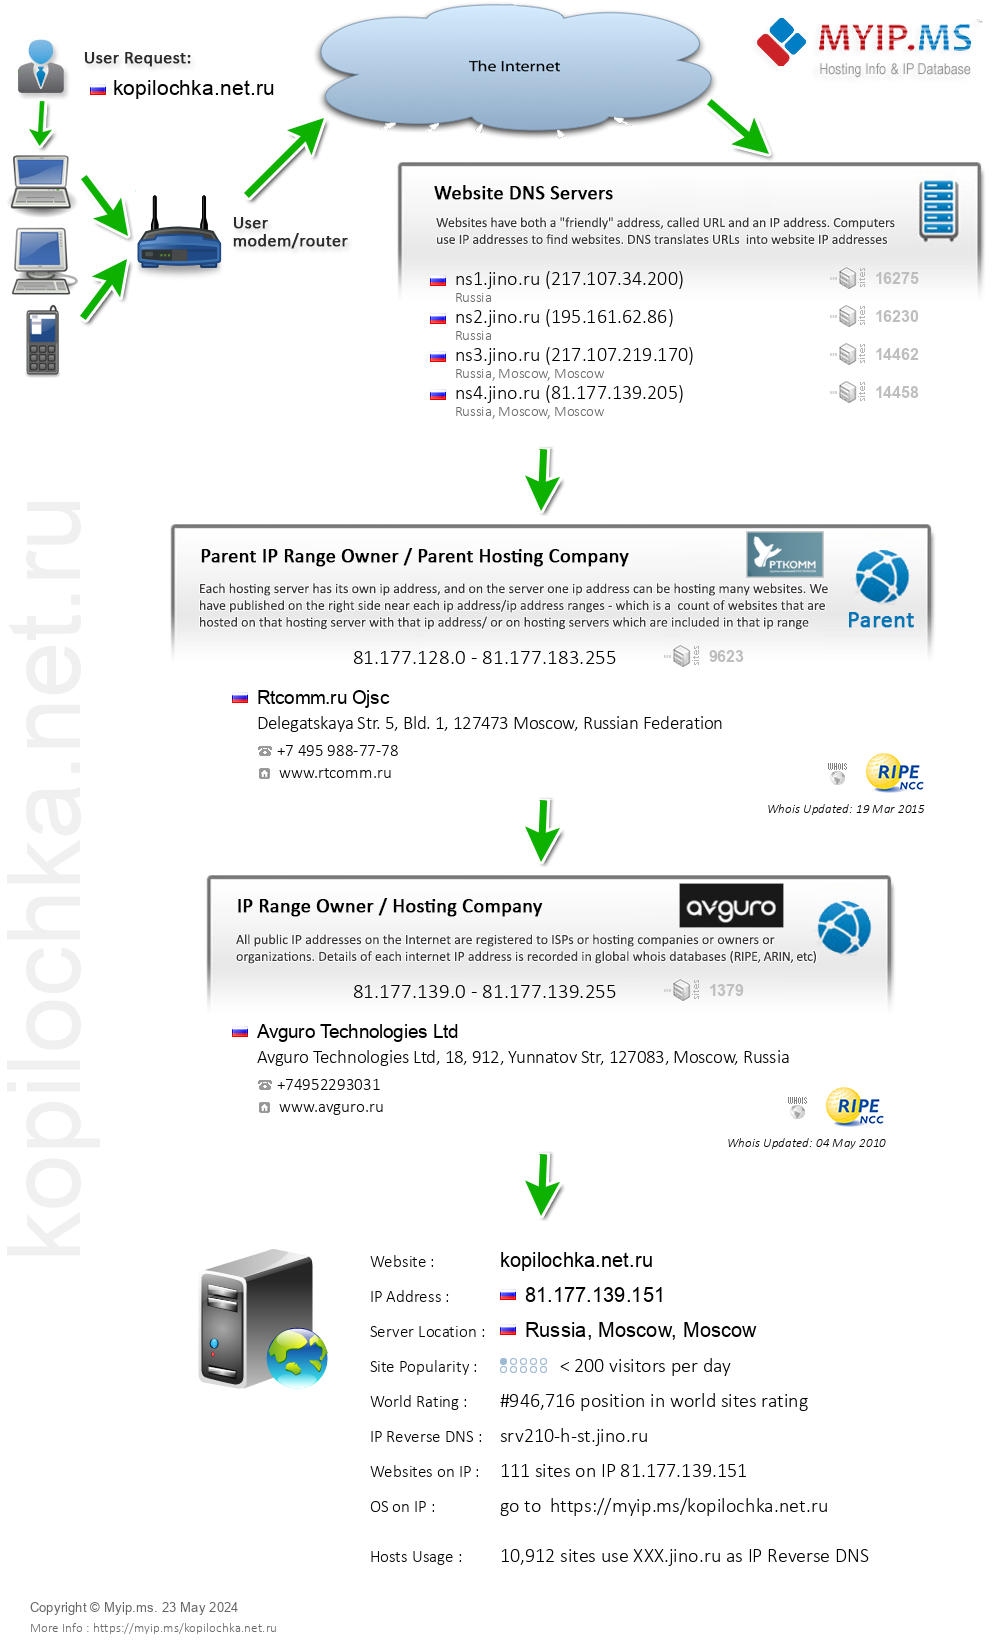 Kopilochka.net.ru - Website Hosting Visual IP Diagram